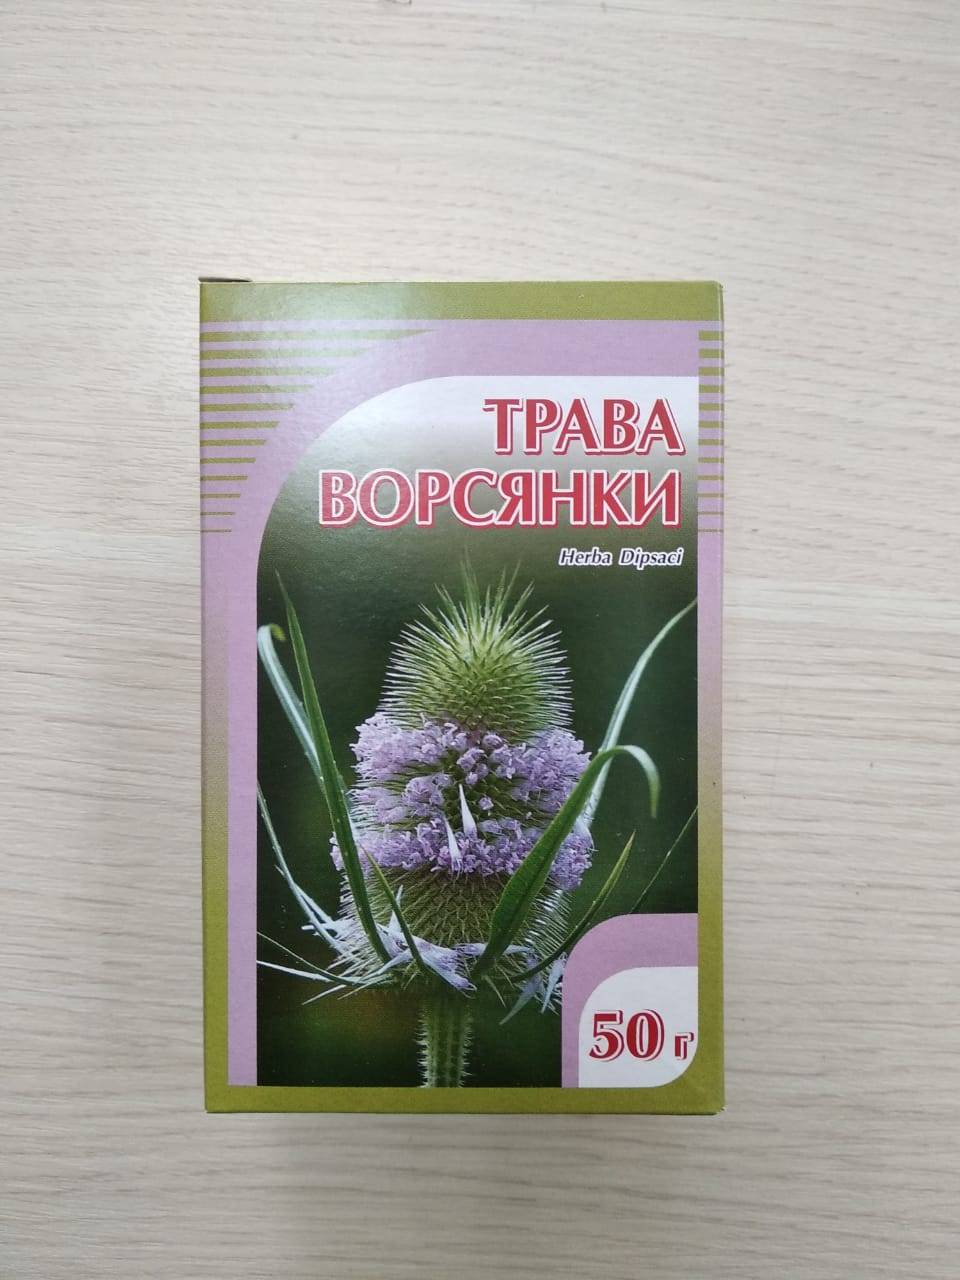 Купить онлайн Ворсянка трава Хорст, 50 г в интернет-магазине Беришка с доставкой по Хабаровску и по России недорого.